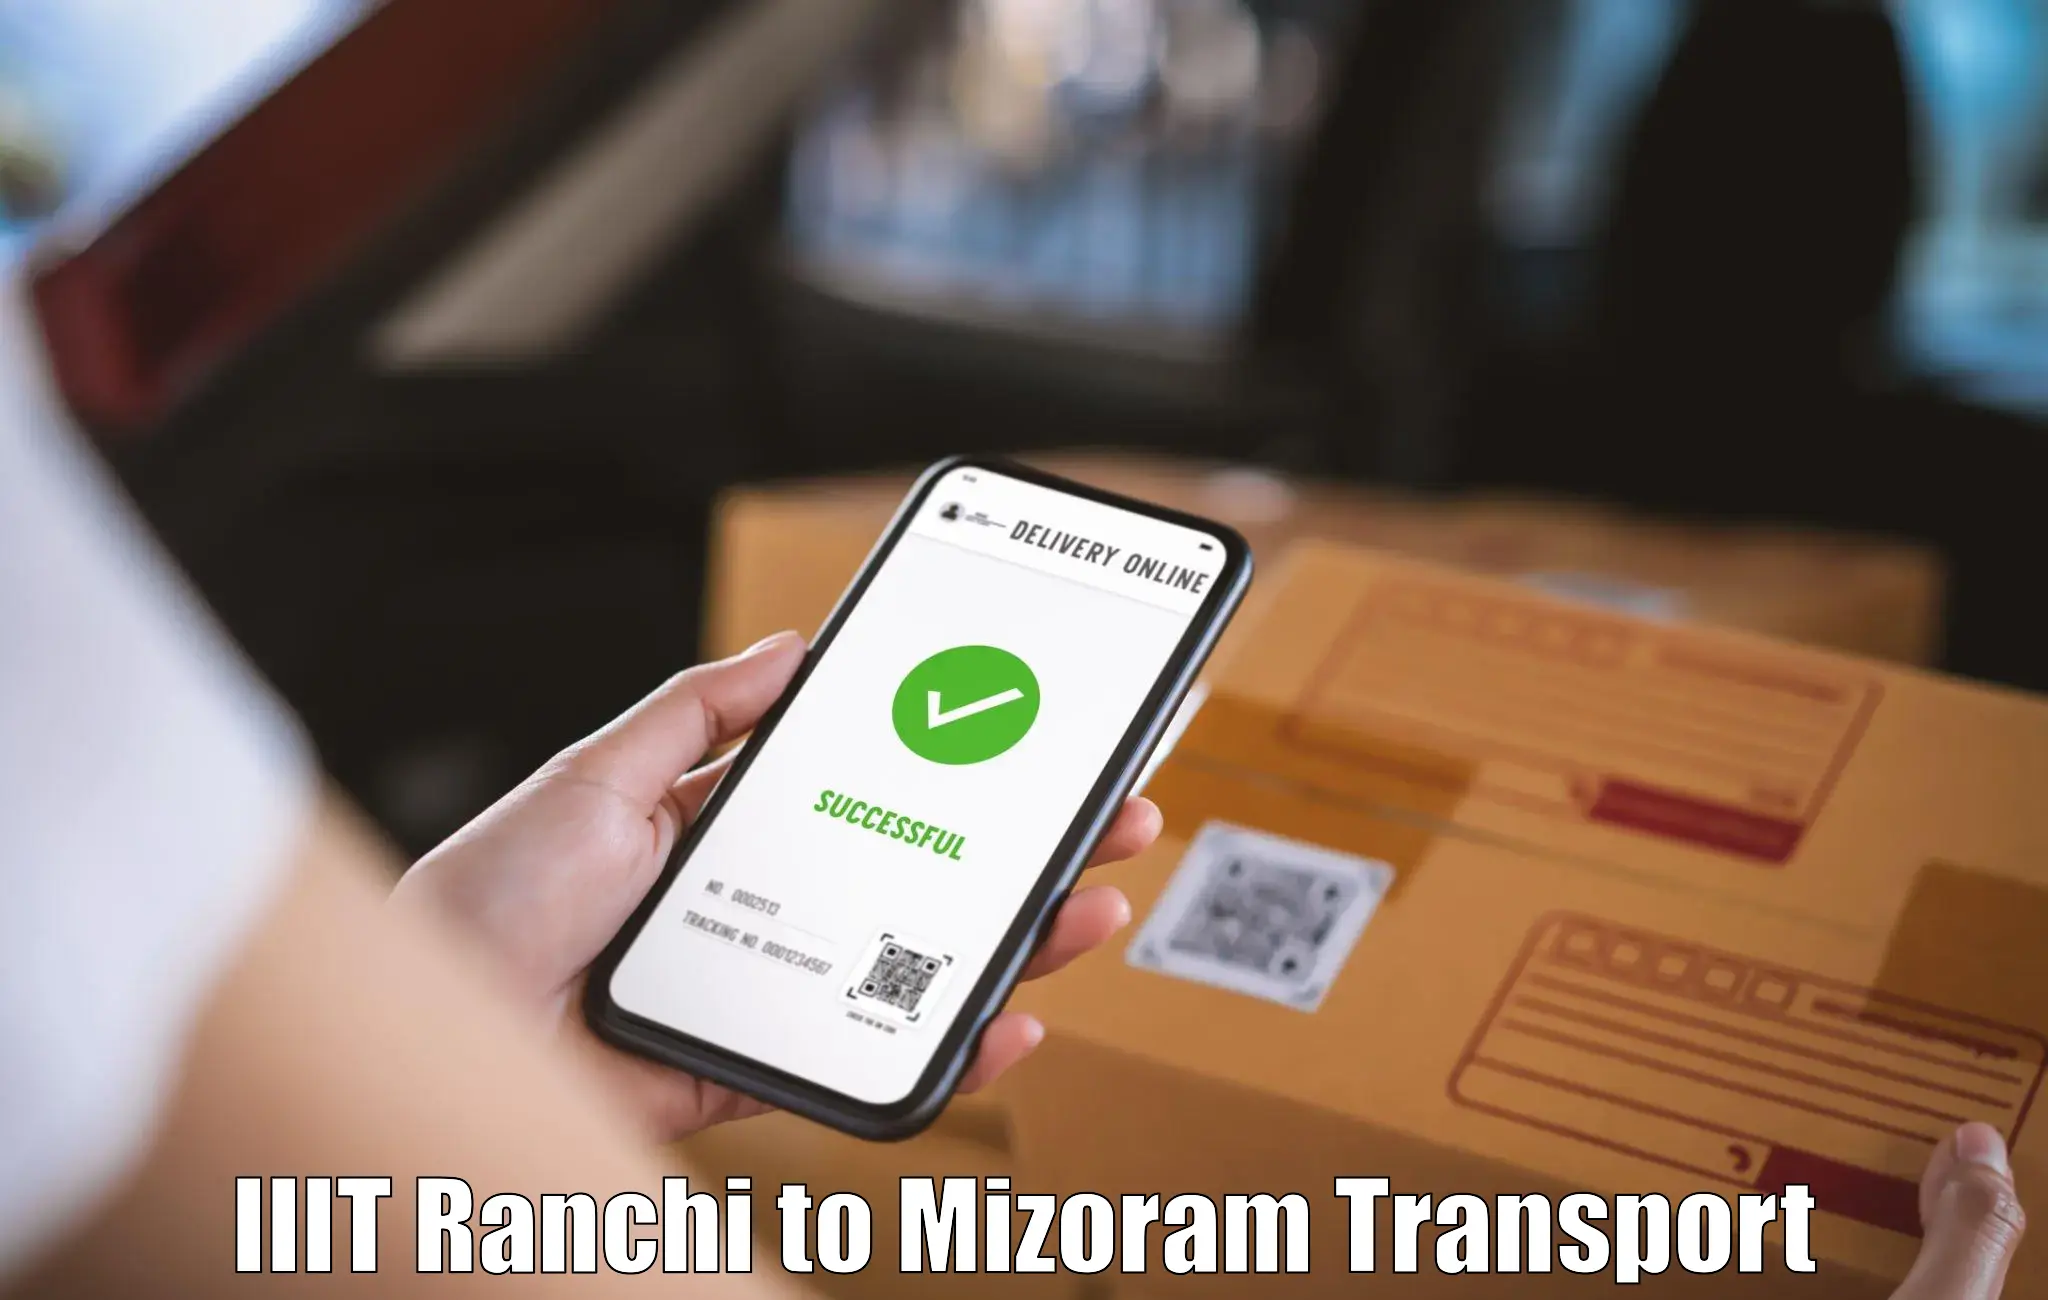 Shipping partner IIIT Ranchi to Mizoram